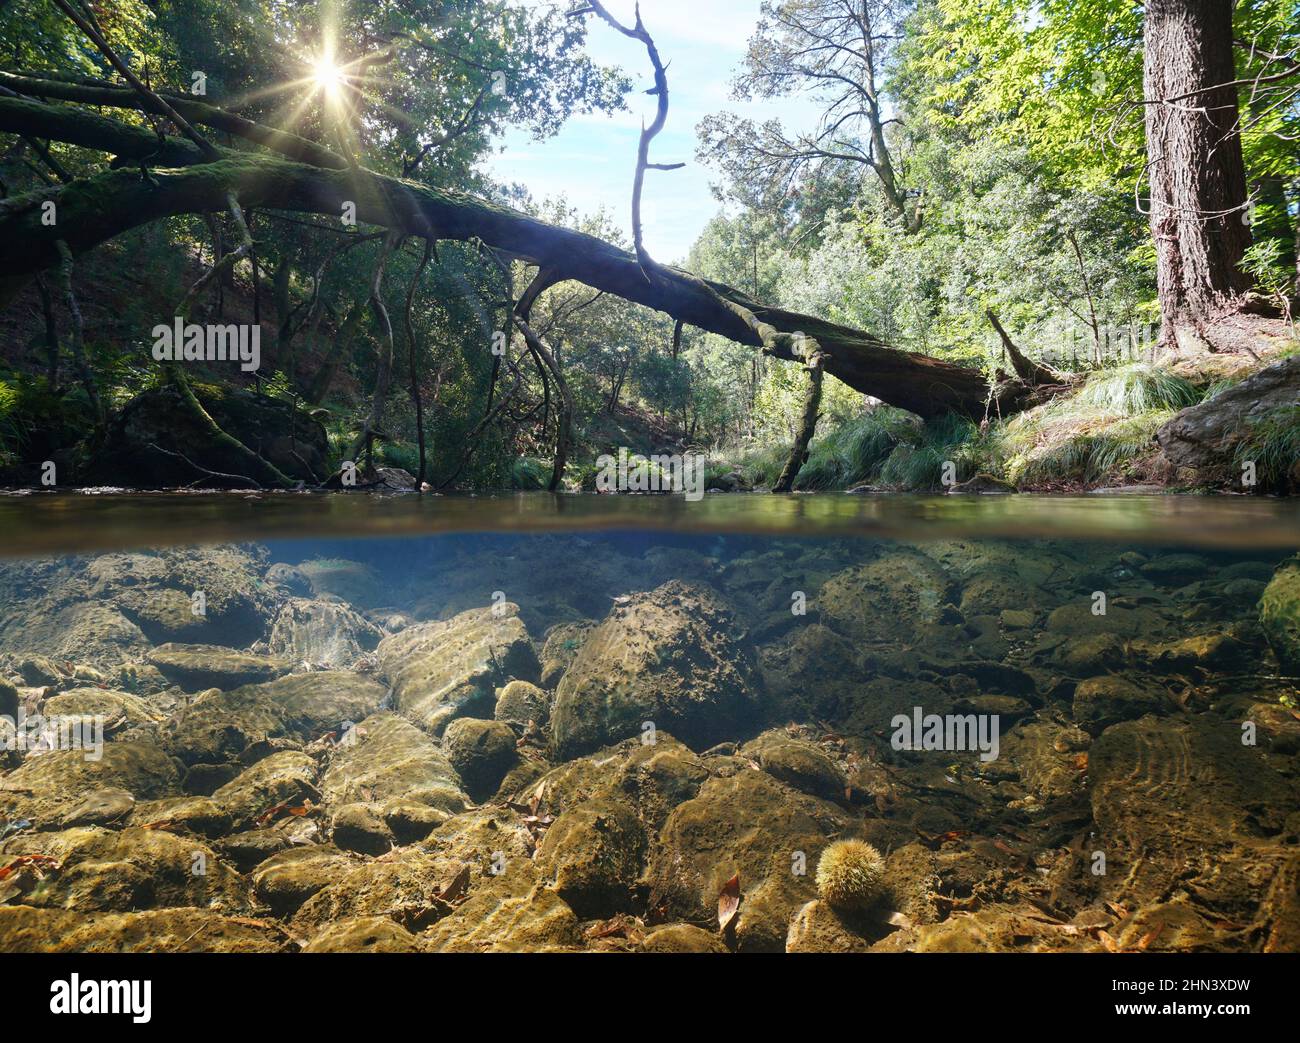 Tronco de árbol caído sobre el río en el bosque, vista a dos niveles sobre y debajo de la superficie del agua, España, Galicia, provincia de Pontevedra Foto de stock